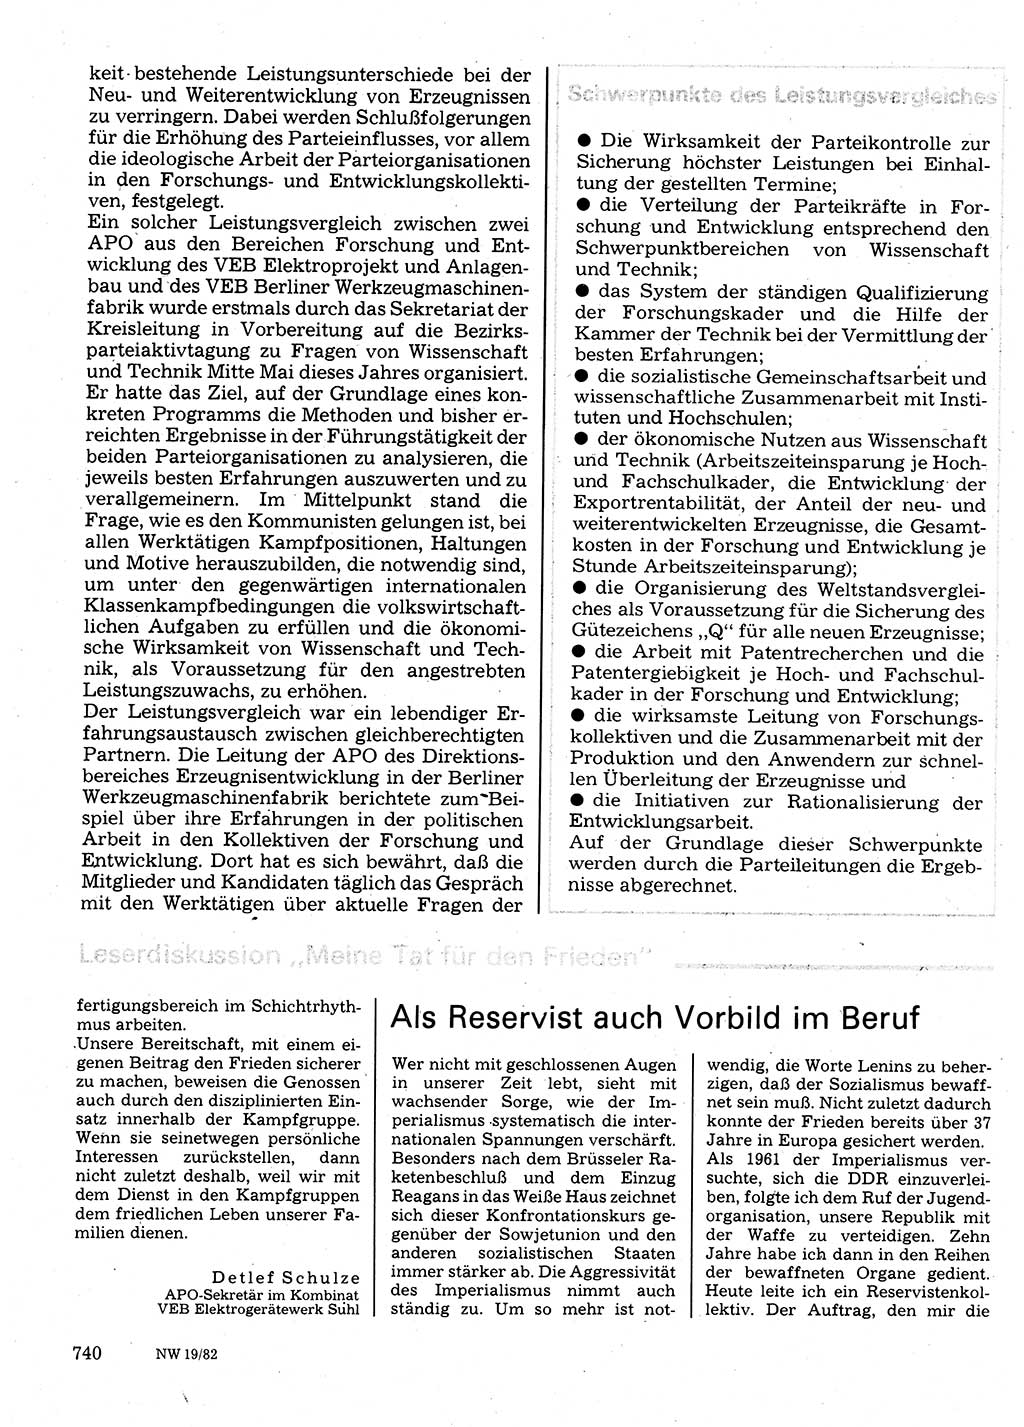 Neuer Weg (NW), Organ des Zentralkomitees (ZK) der SED (Sozialistische Einheitspartei Deutschlands) für Fragen des Parteilebens, 37. Jahrgang [Deutsche Demokratische Republik (DDR)] 1982, Seite 740 (NW ZK SED DDR 1982, S. 740)